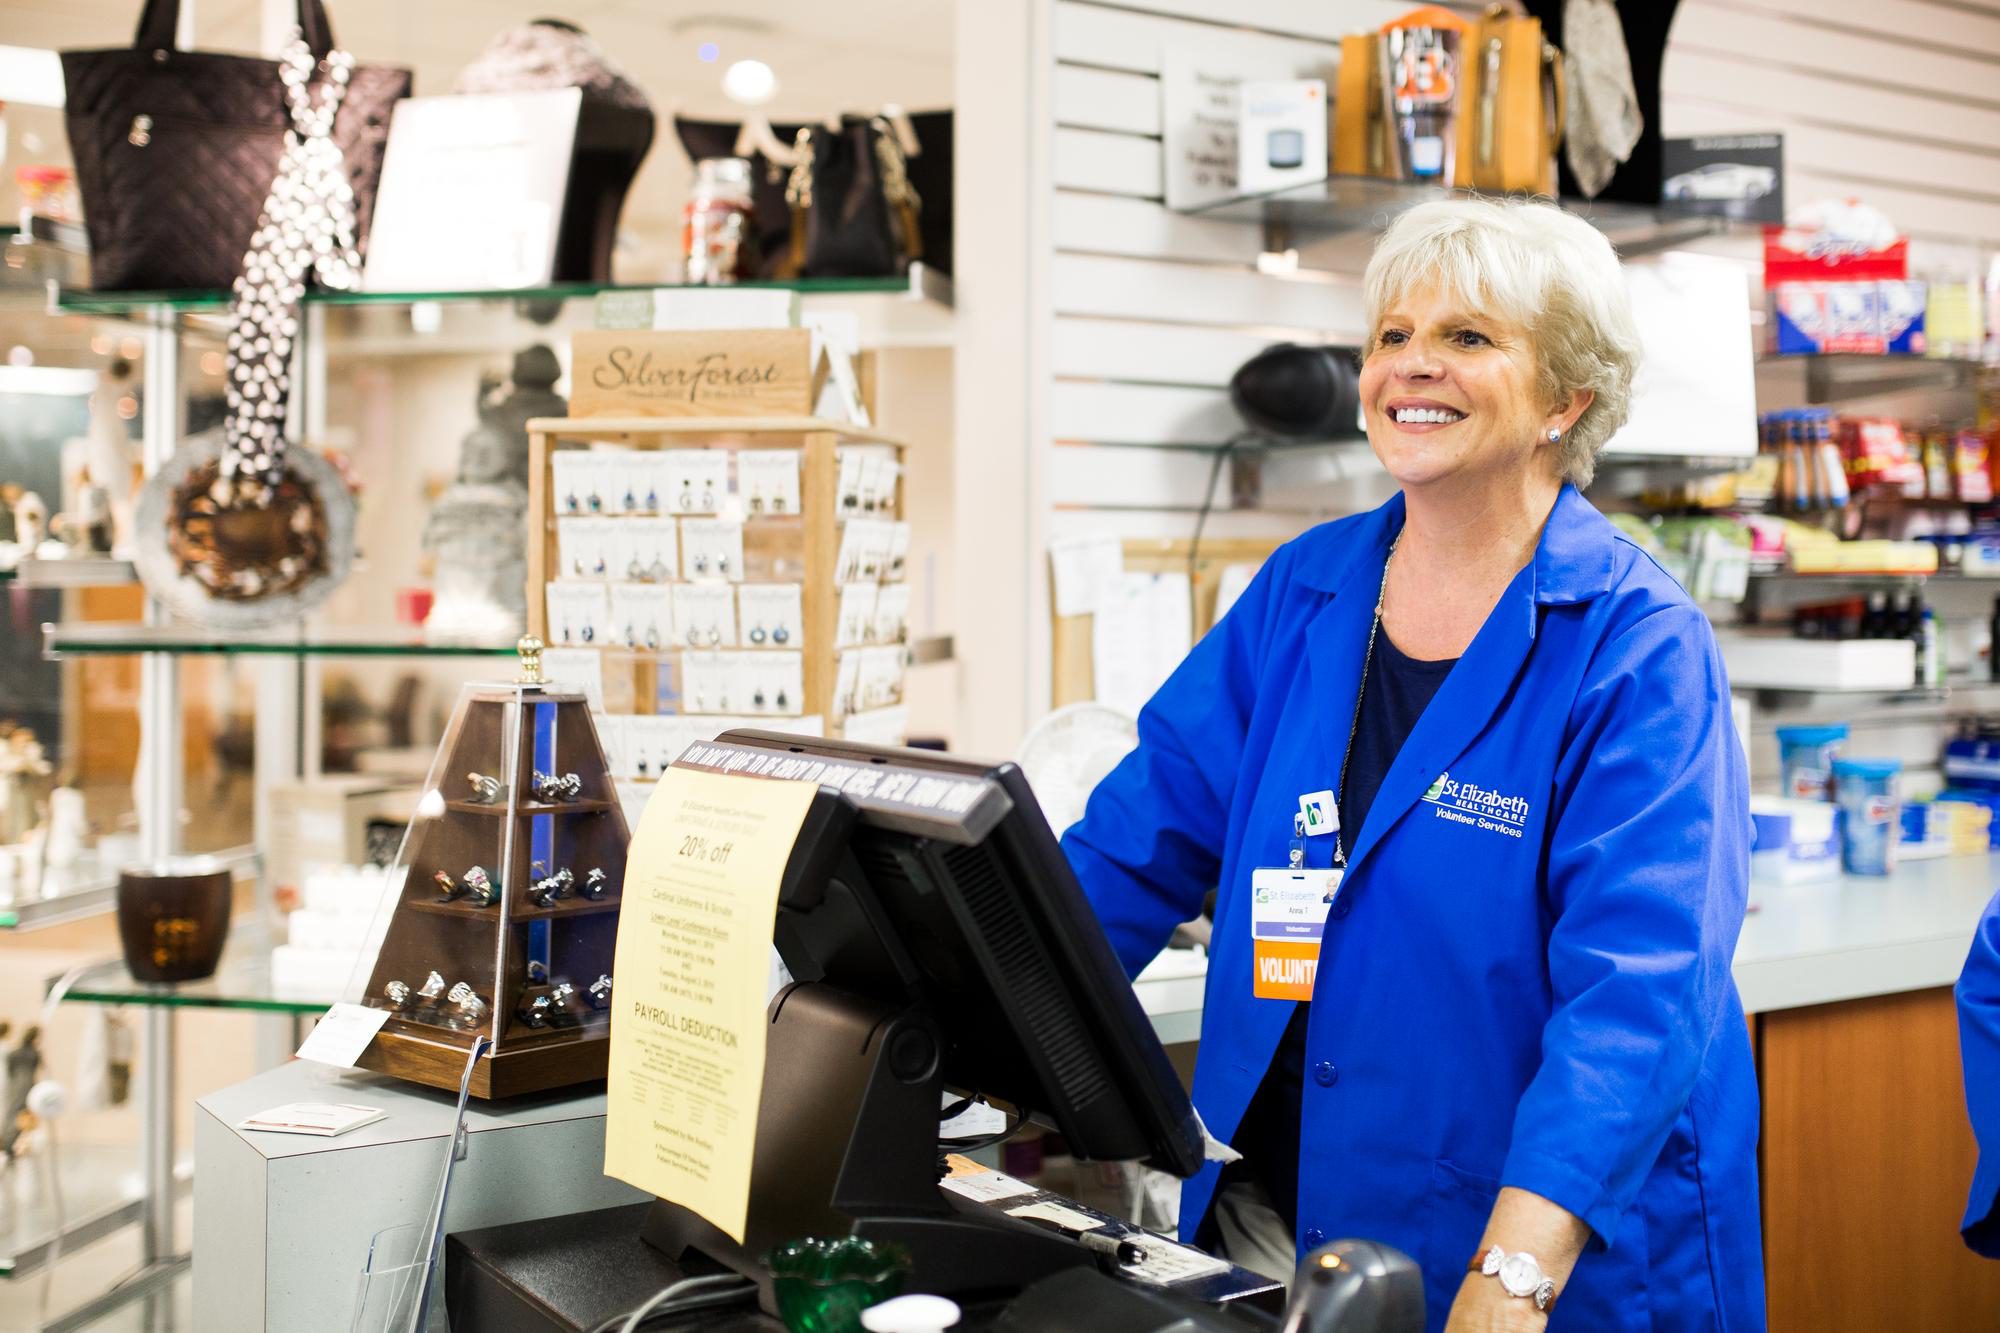 A volunteer stands behind a cash register at the St. Elizabeth Gift Shop